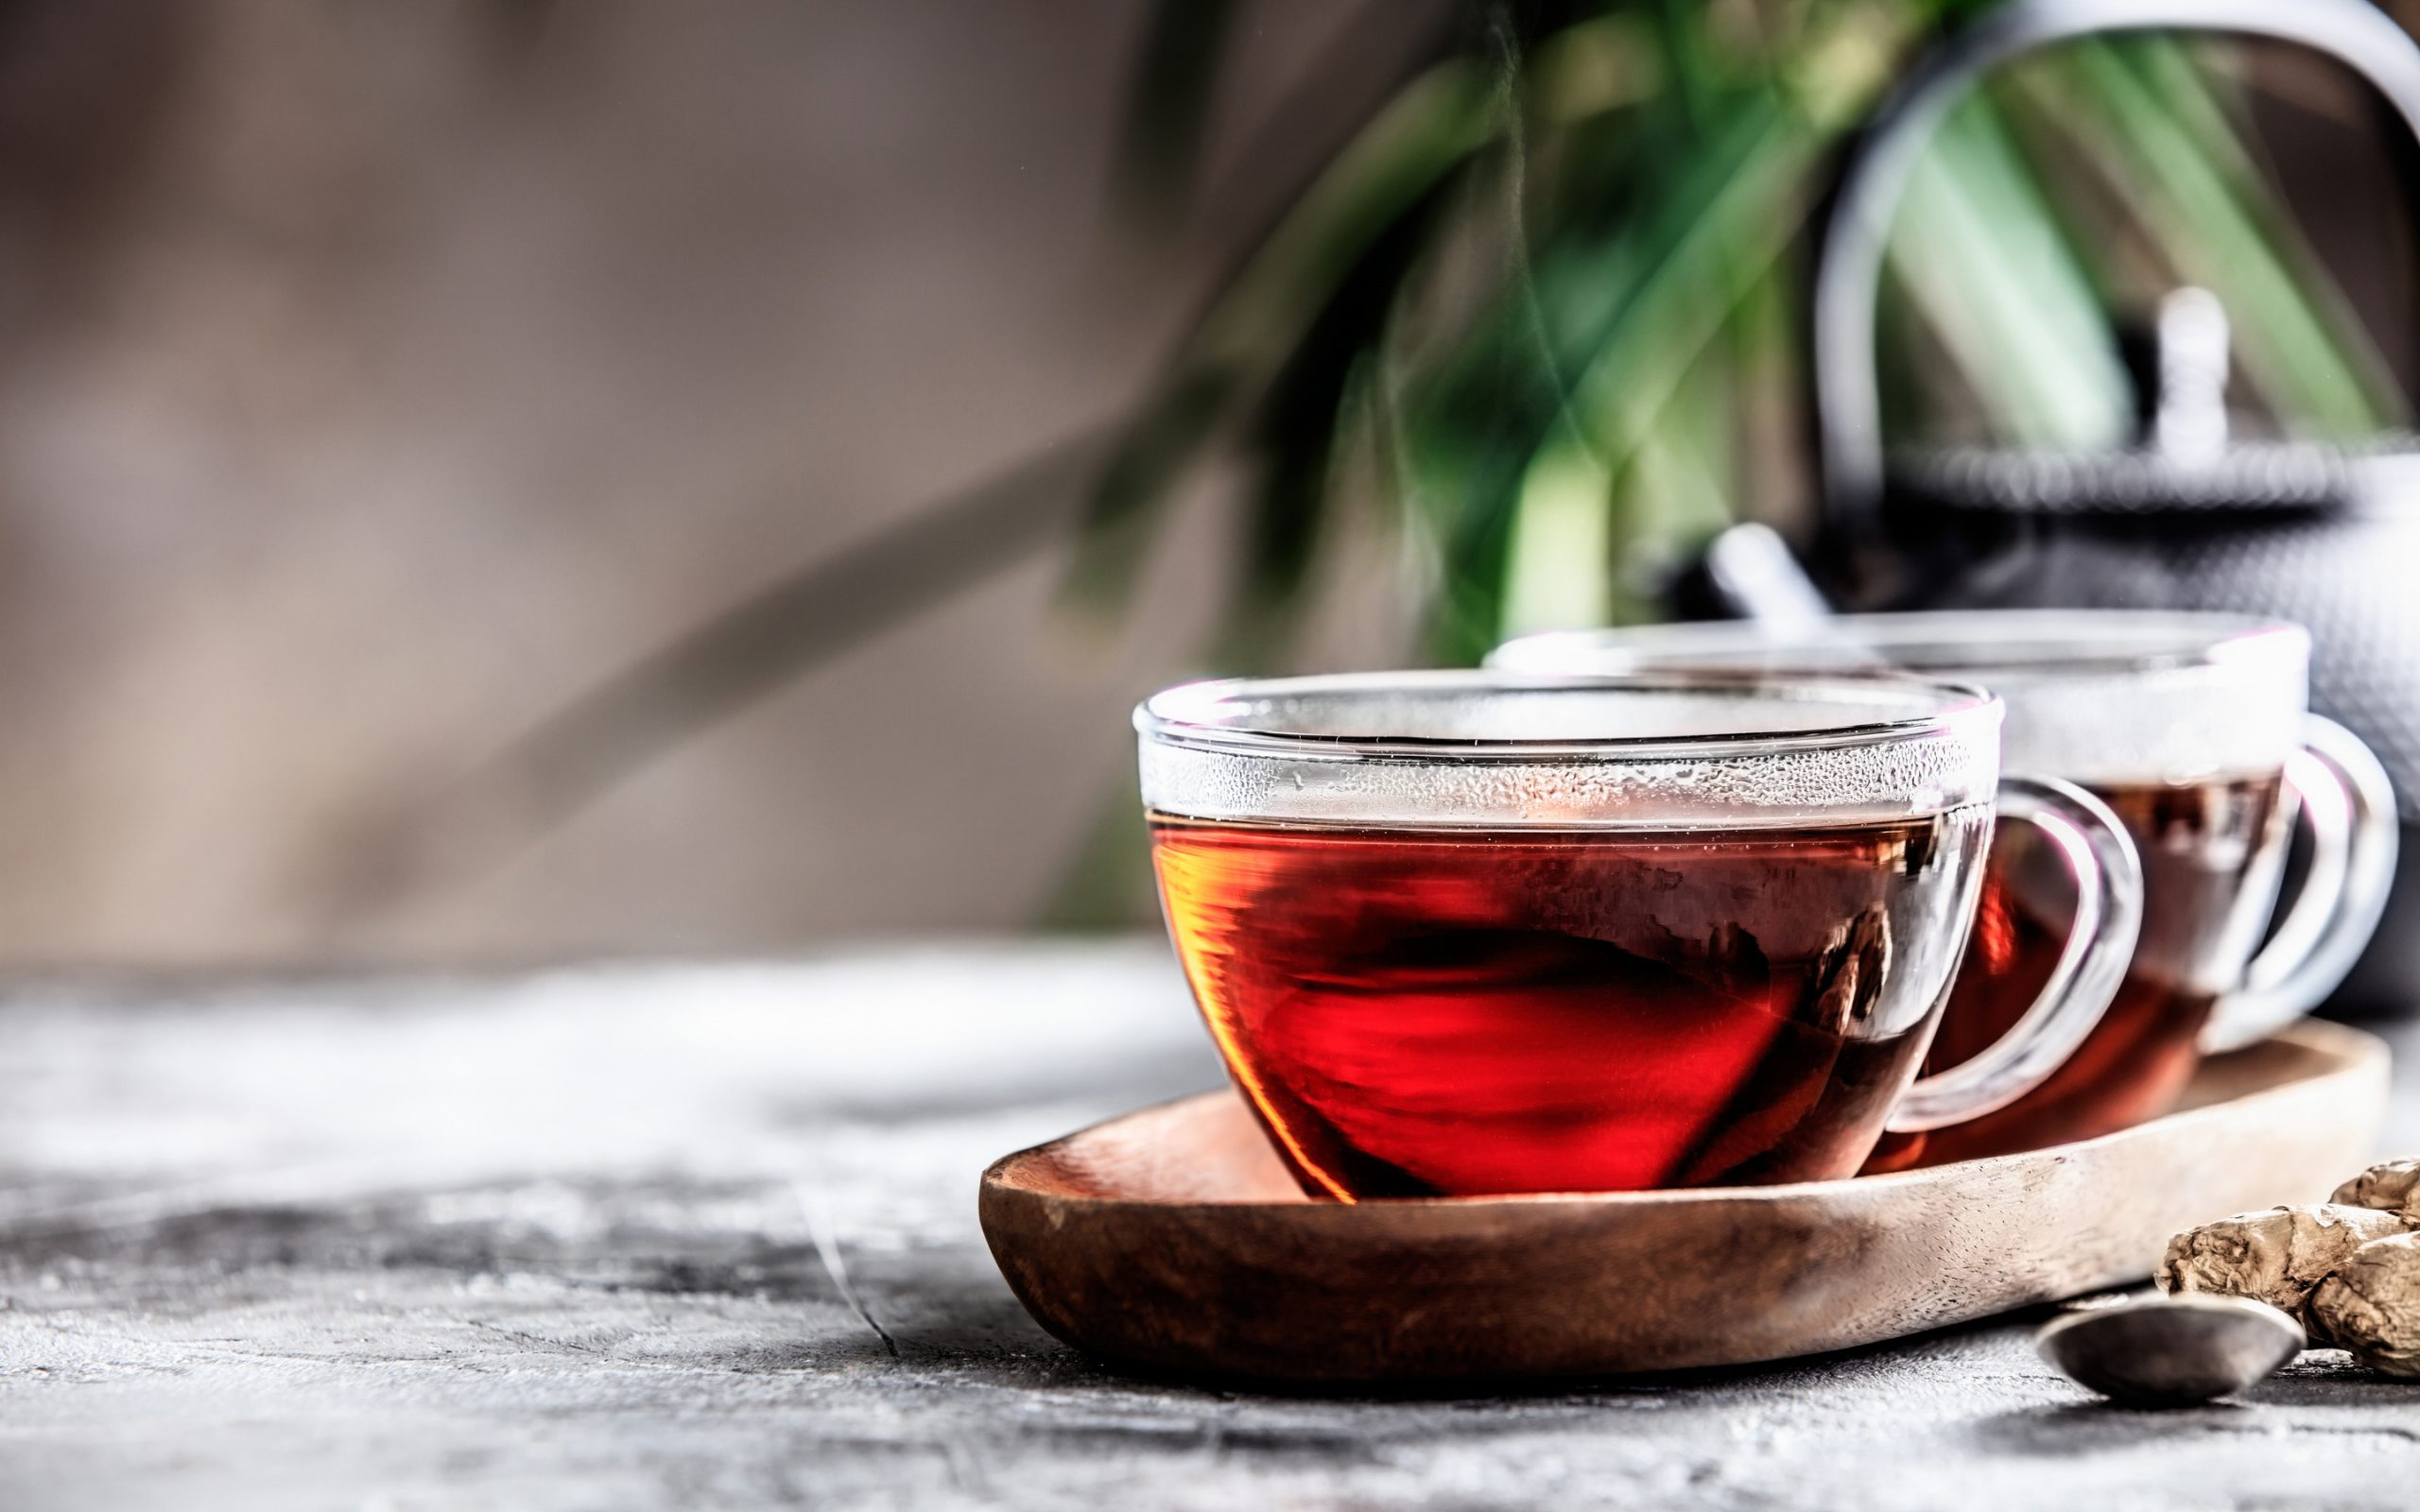  خواص چای سیاه برای سلامتی